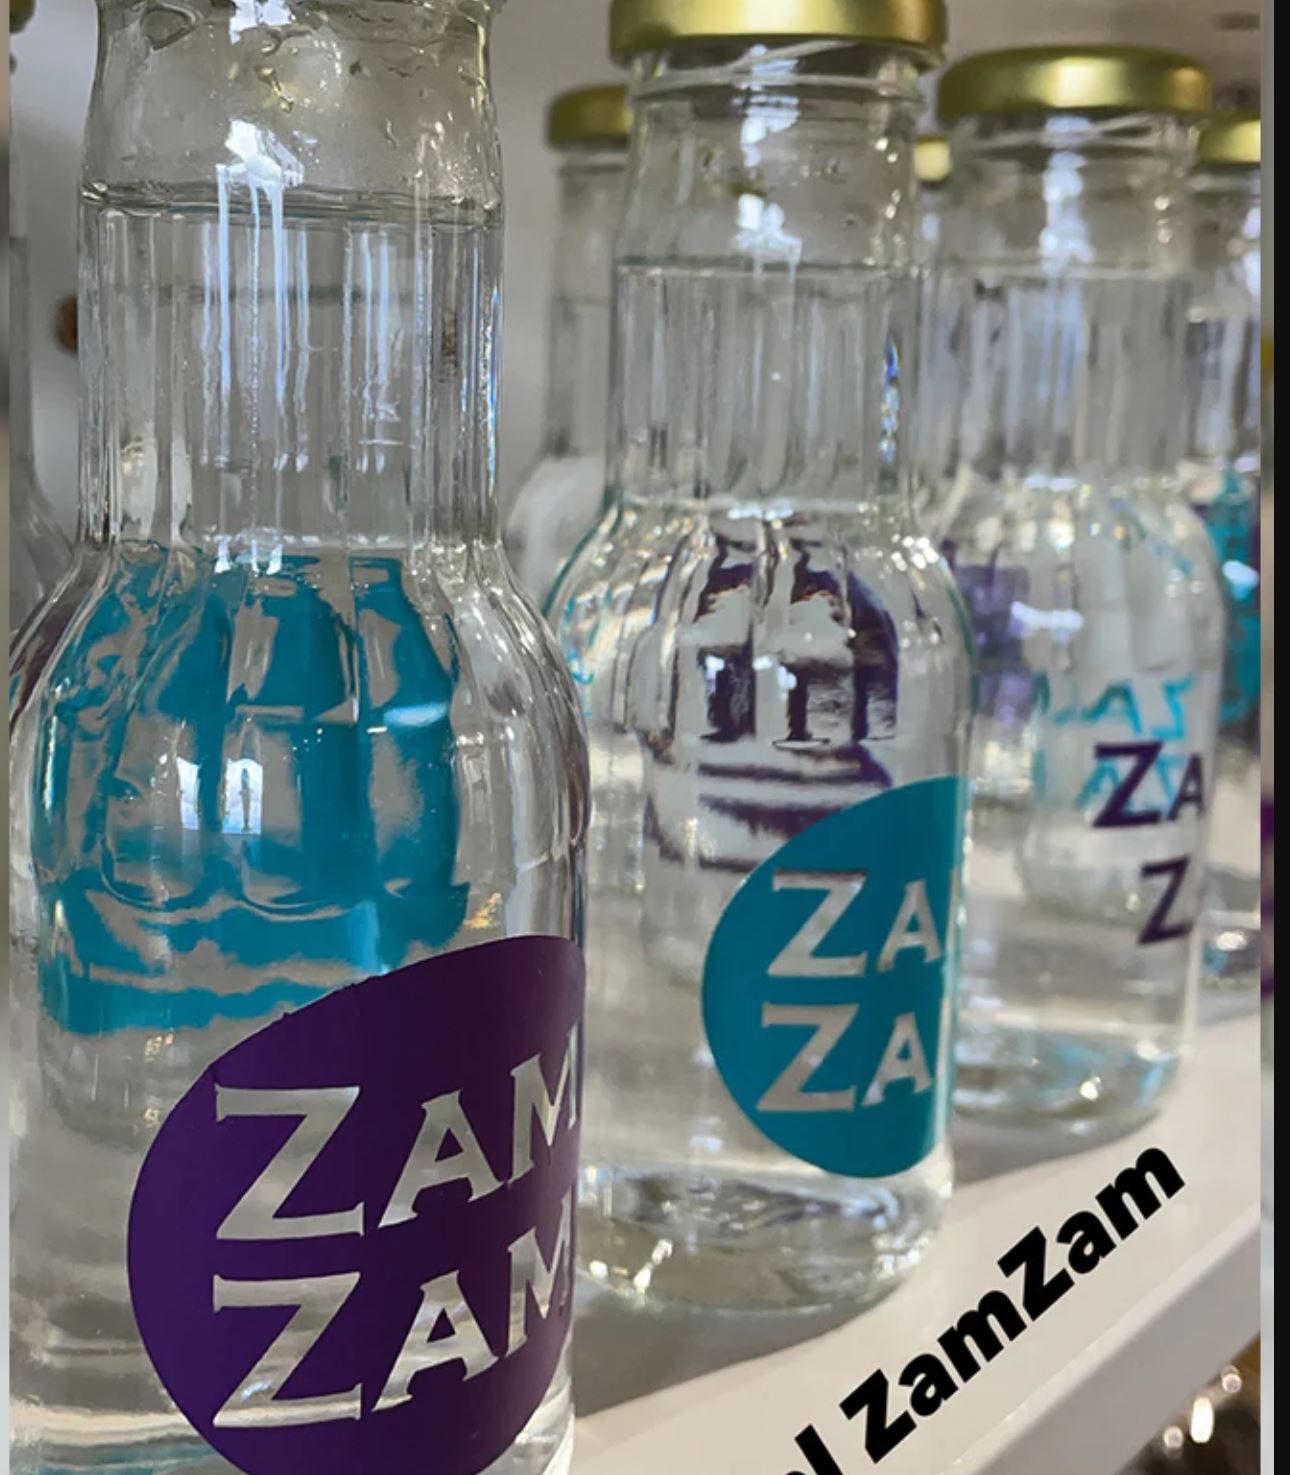 Top 7 Benefits of Zamzam Water in Islam